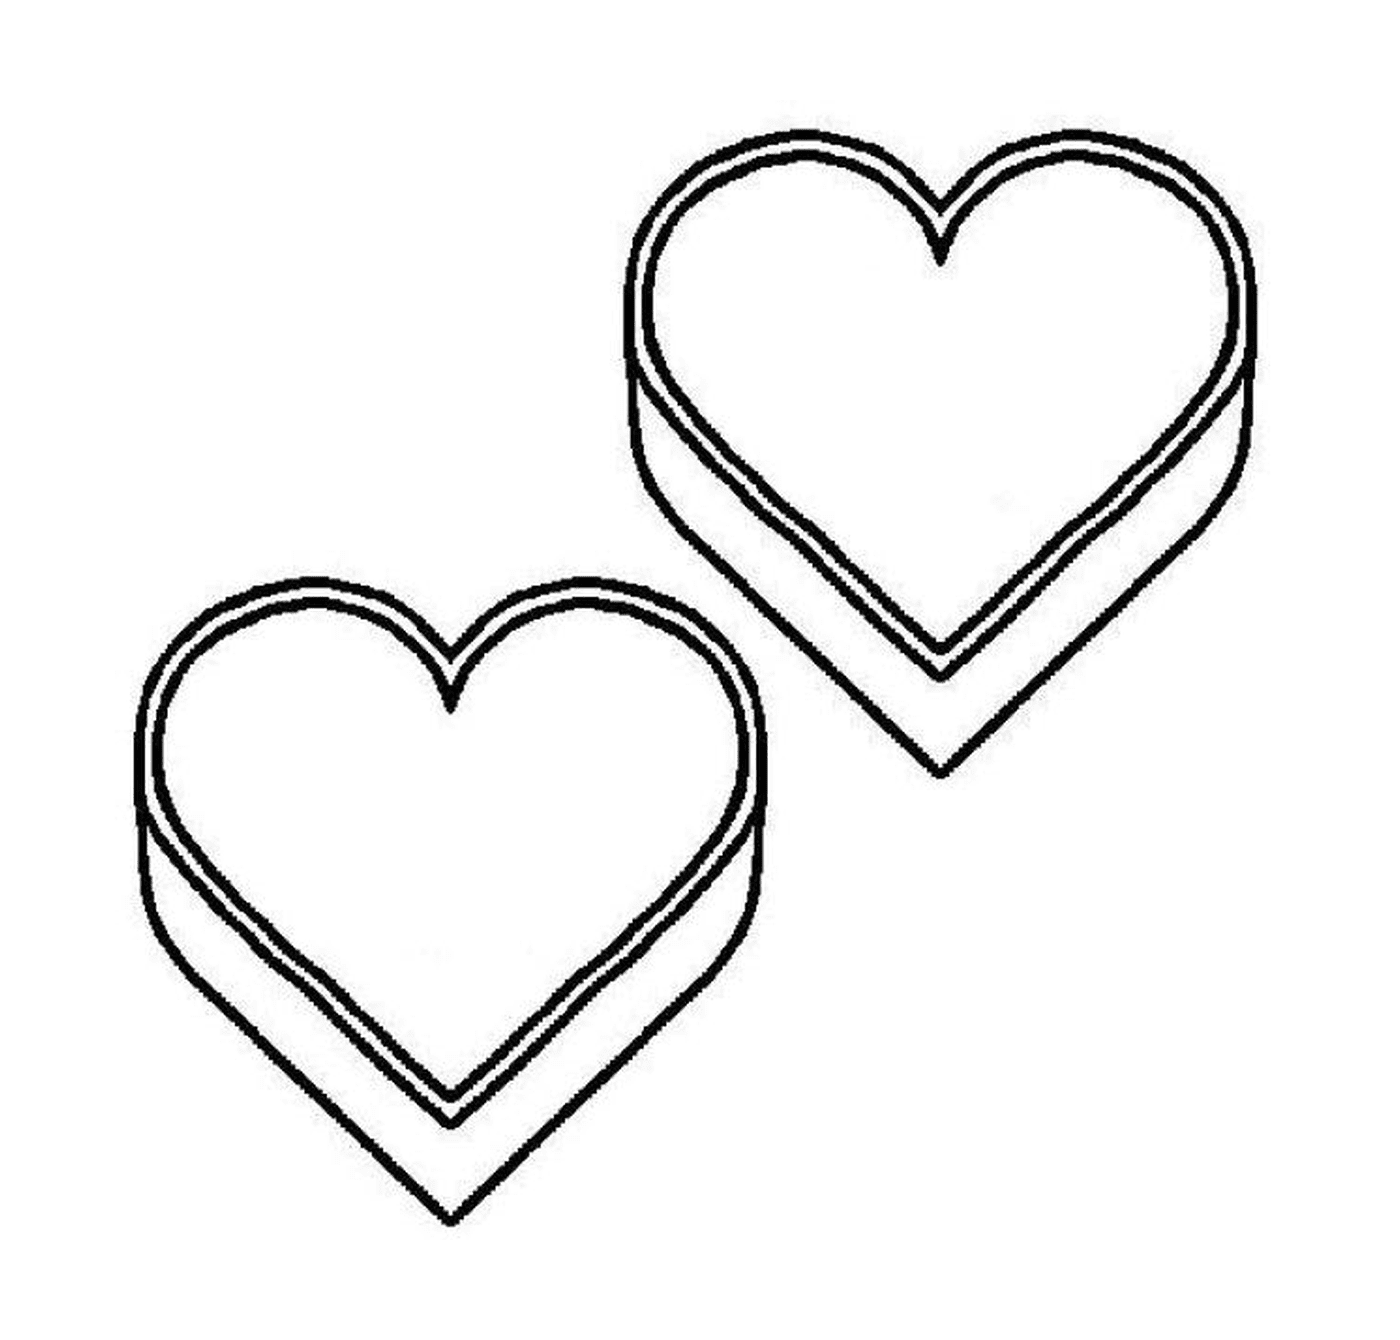  Две коробки в форме сердца, расположенные бок о бок 